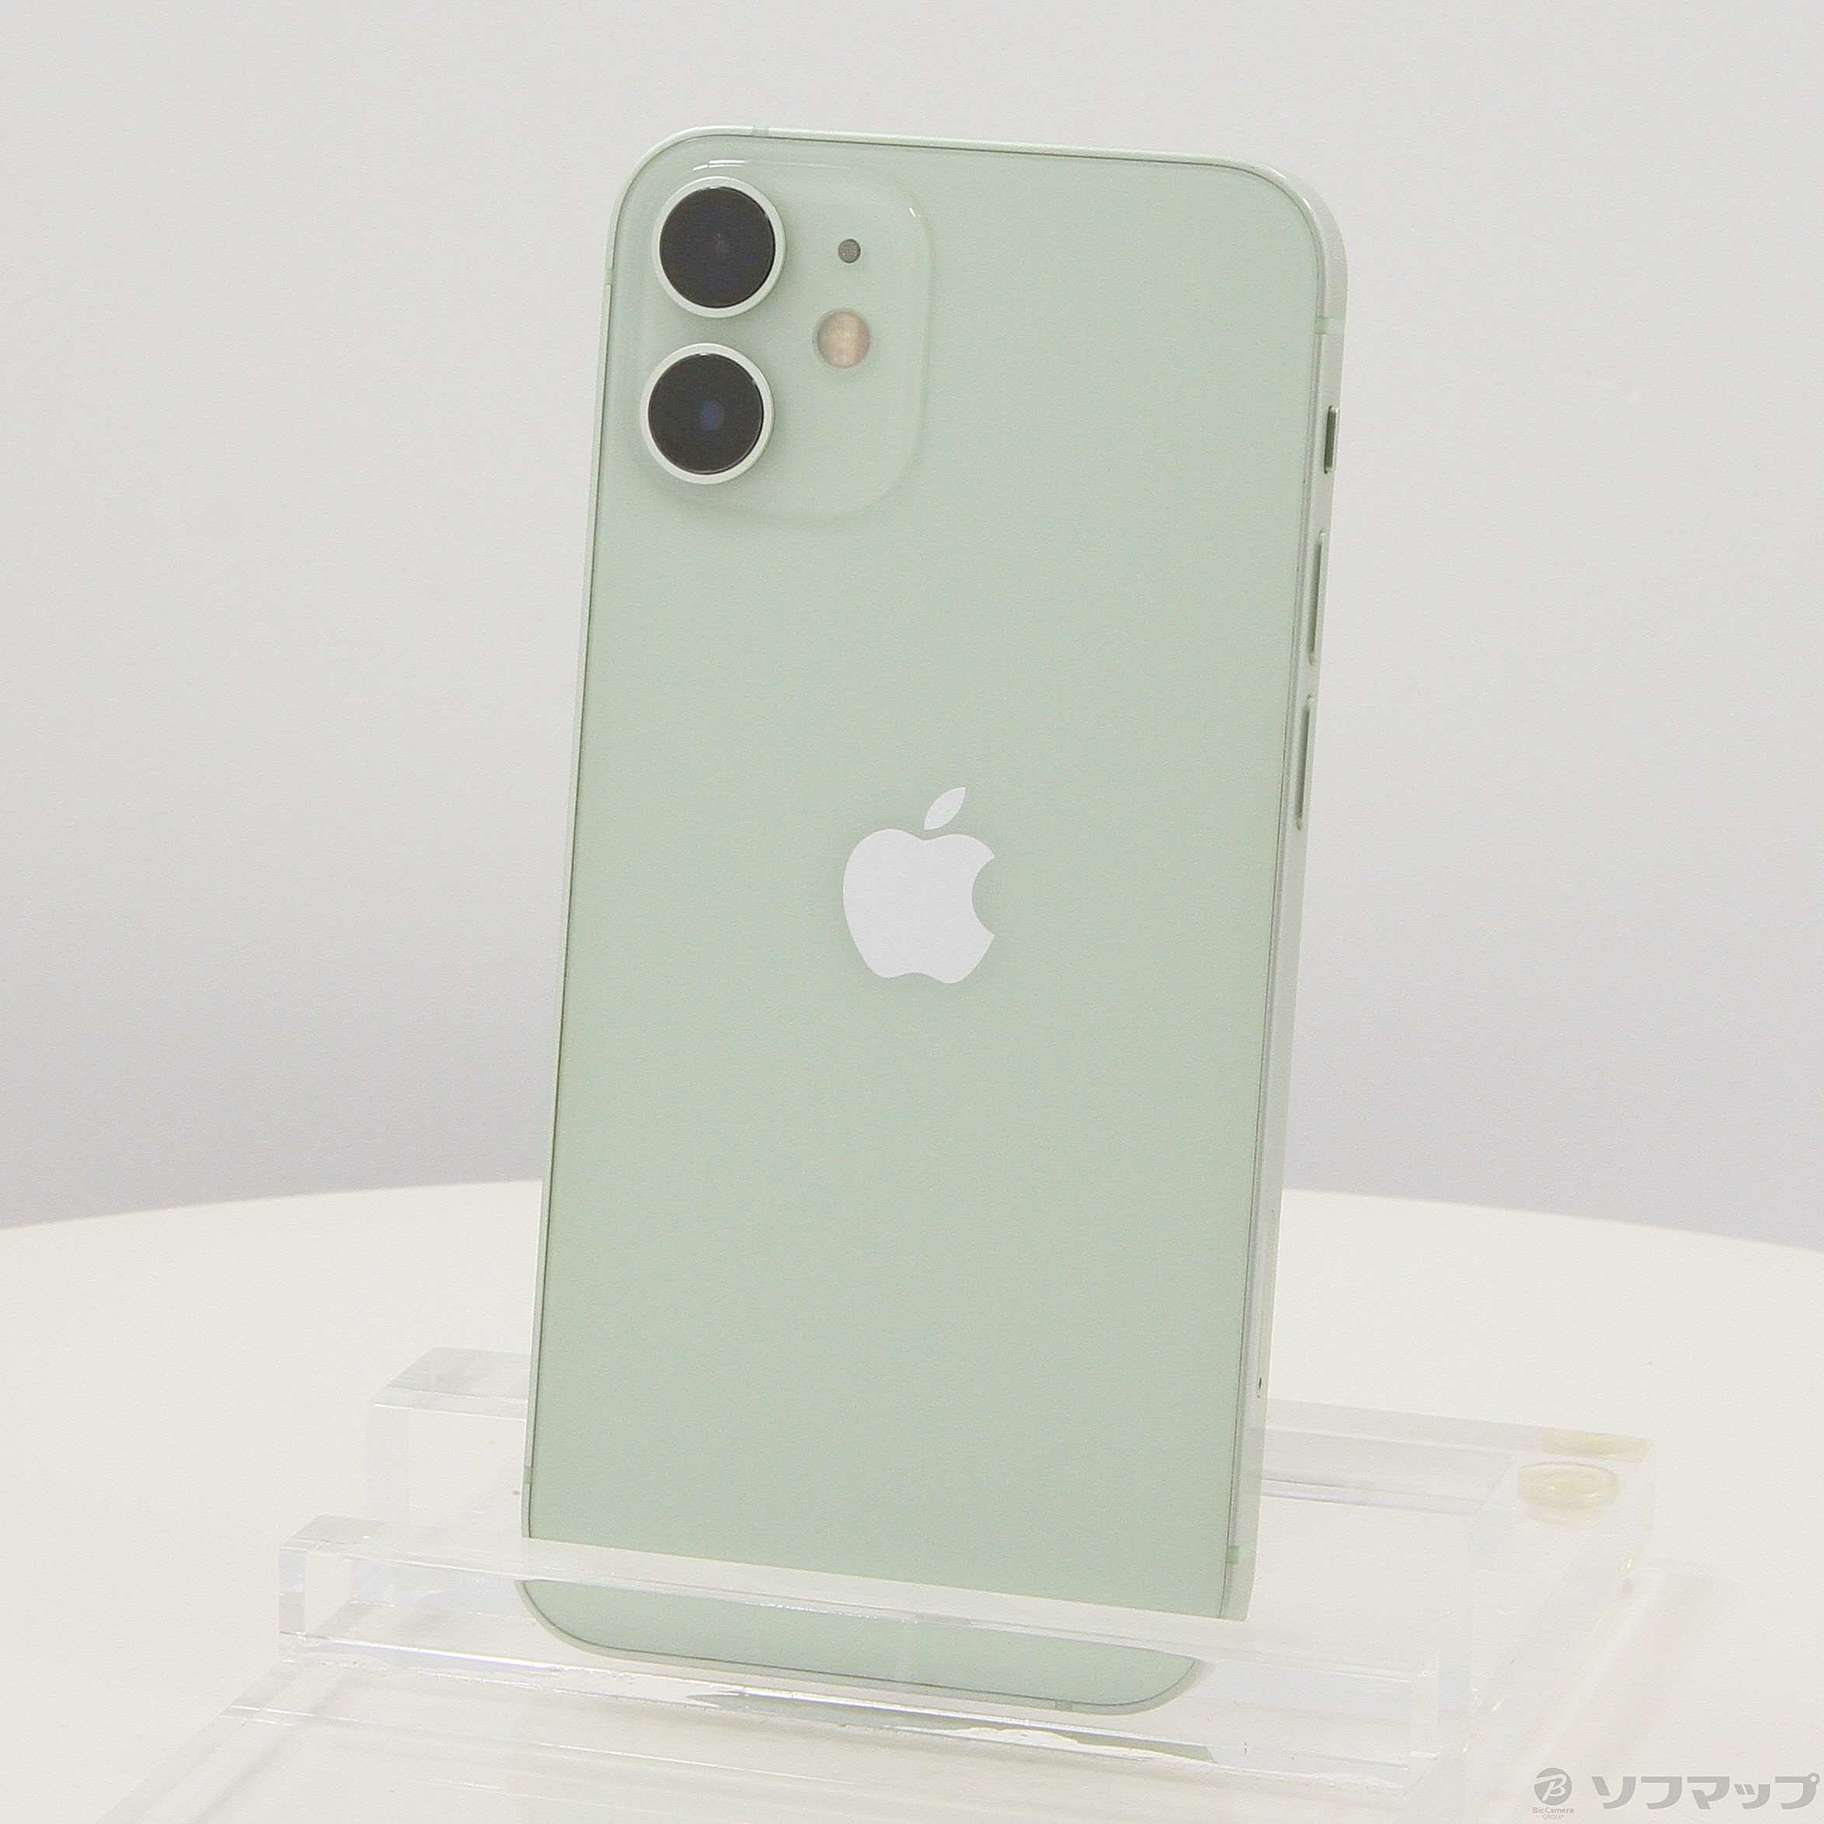 新品 iPhone12 mini 64GB グリーン SIMフリー